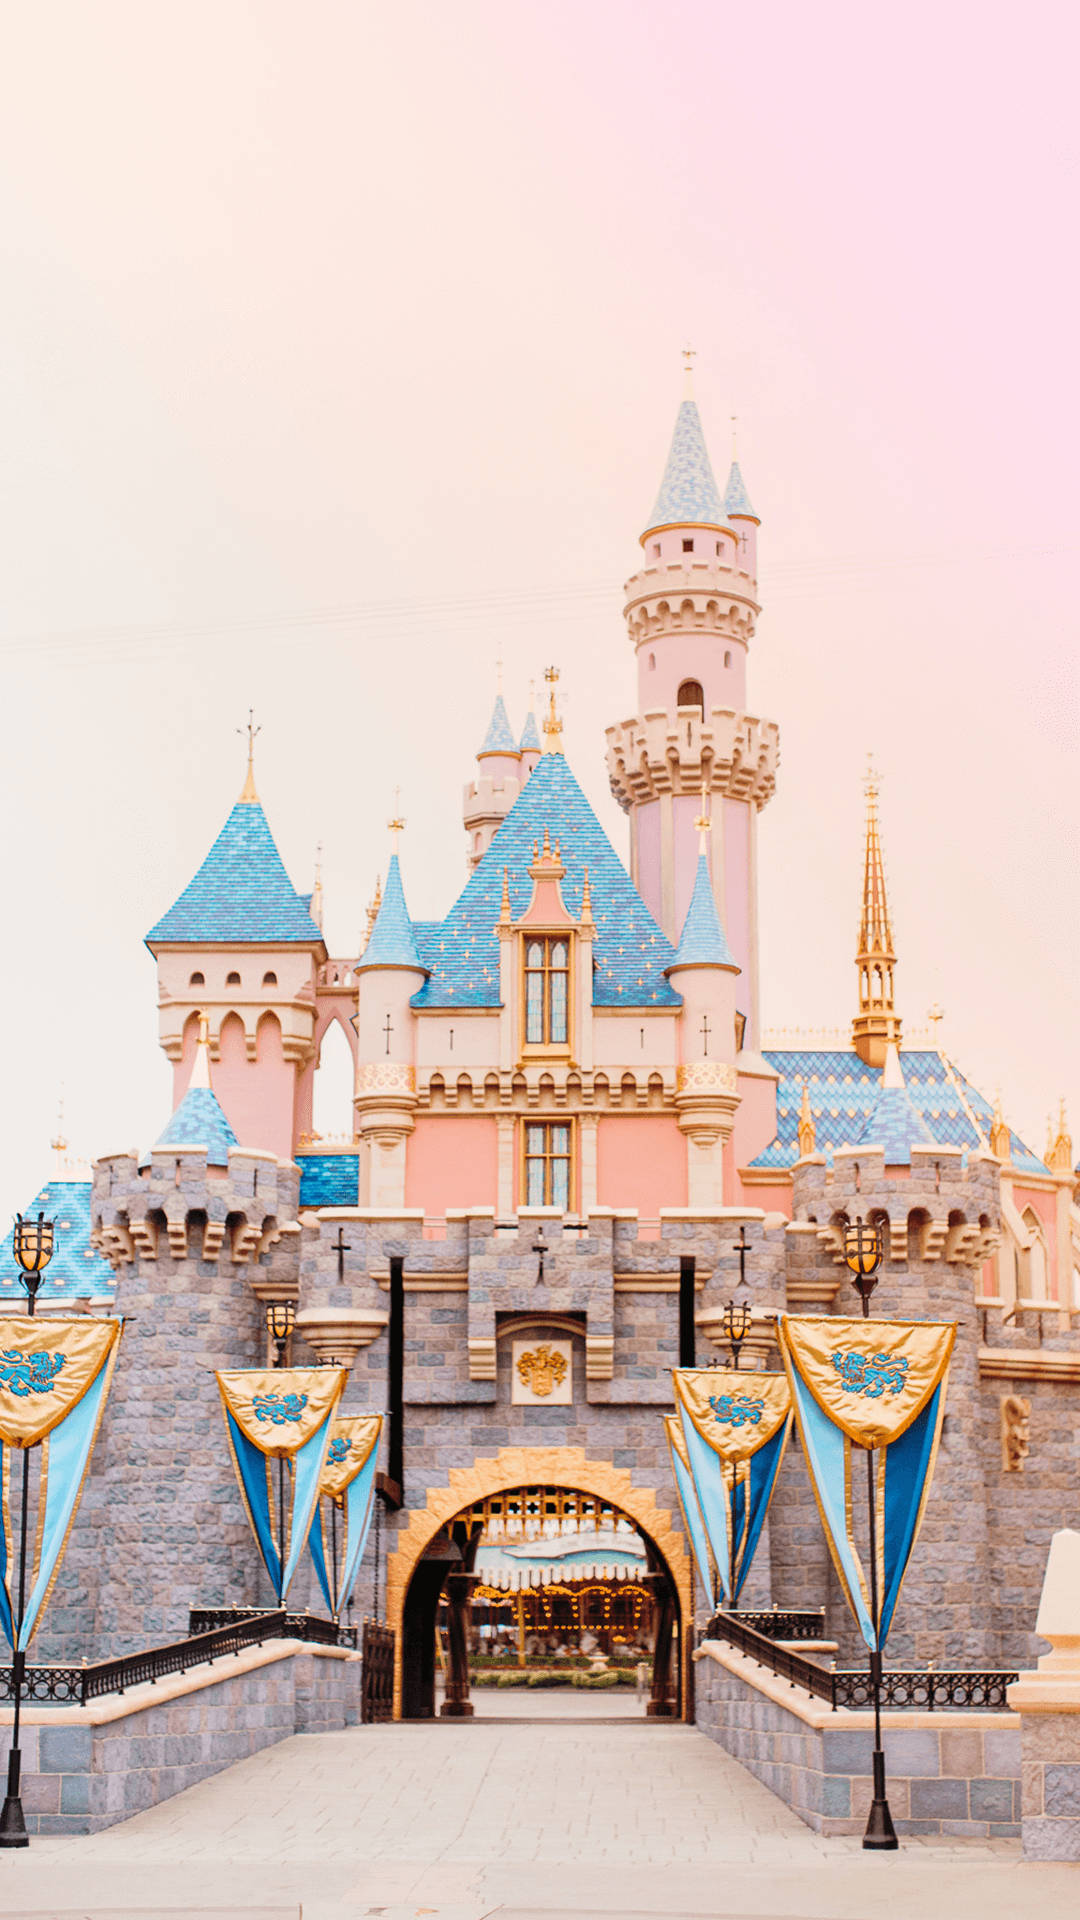 Peach-colored Disney Castle Picture